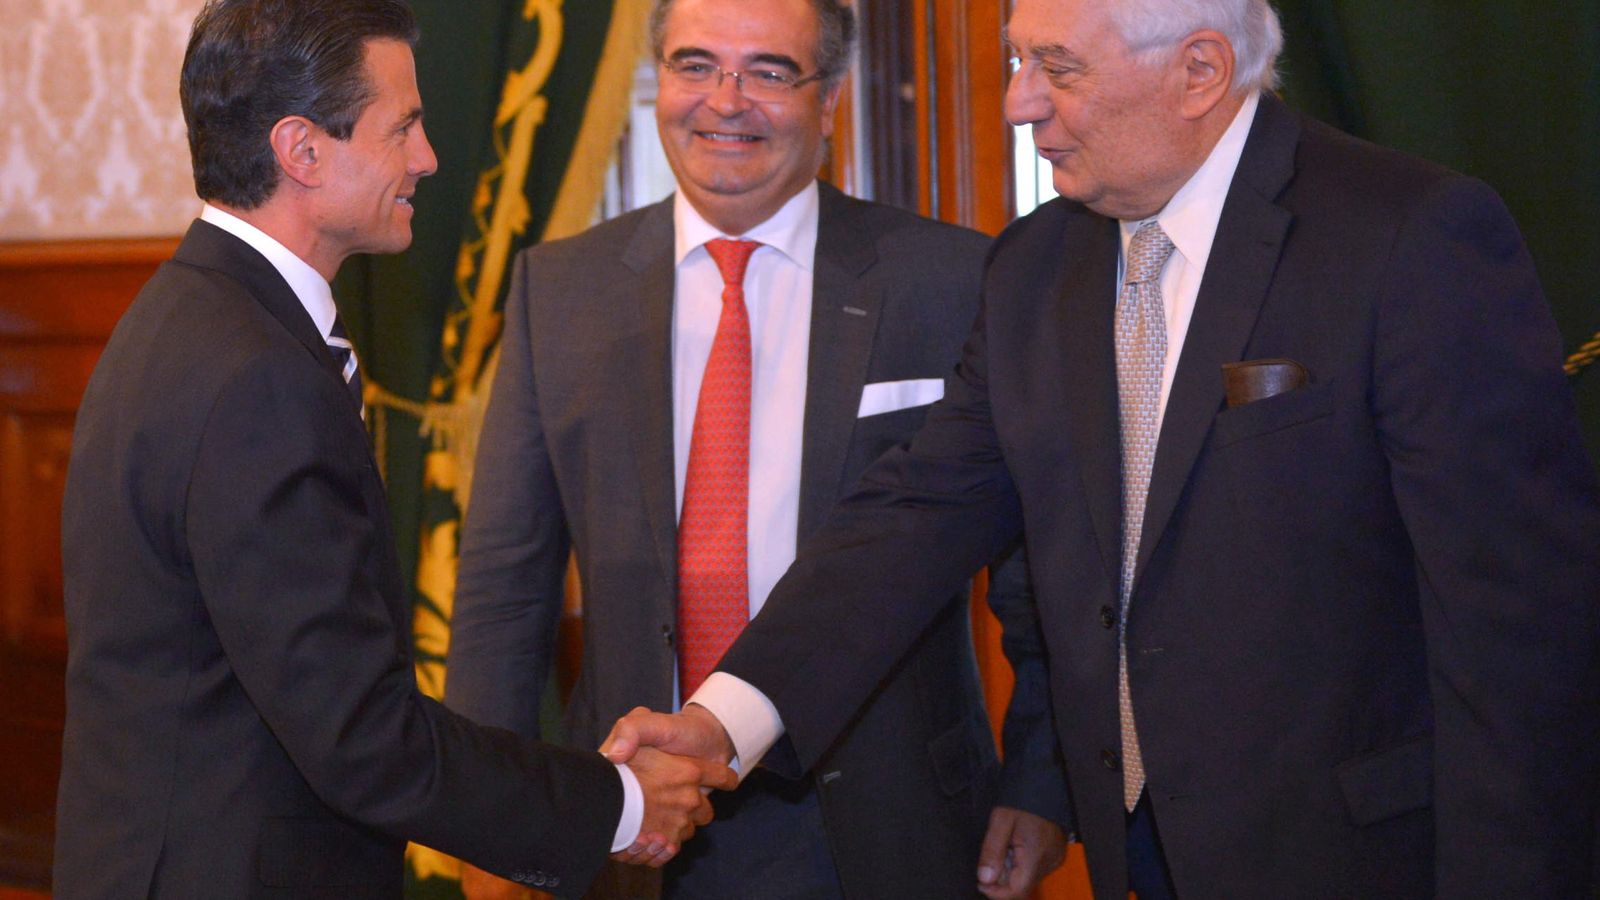 Foto: El presidente del Banco Popular, Ángel Ron (c), y Antonio del Valle (d) saludan al presidente de México, Enrique Peña Nieto. (EFE)